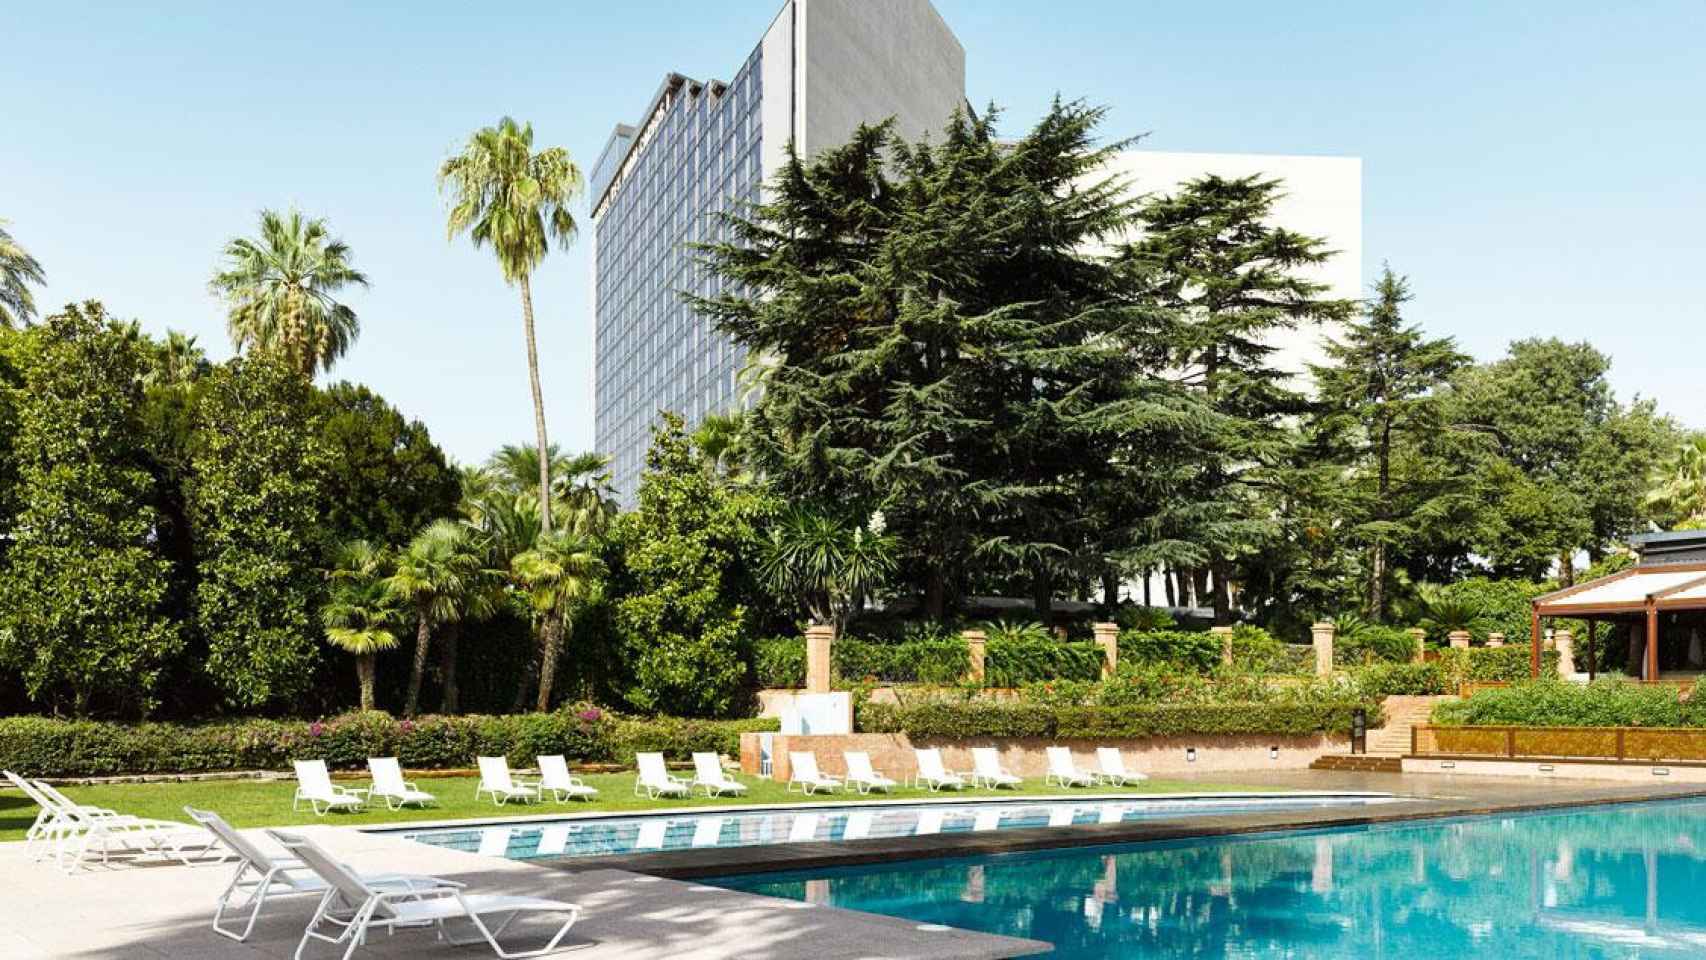 Imagen del hotel Fairmont Juan Carlos I, que negocia su colocación a cinco inversores / CG